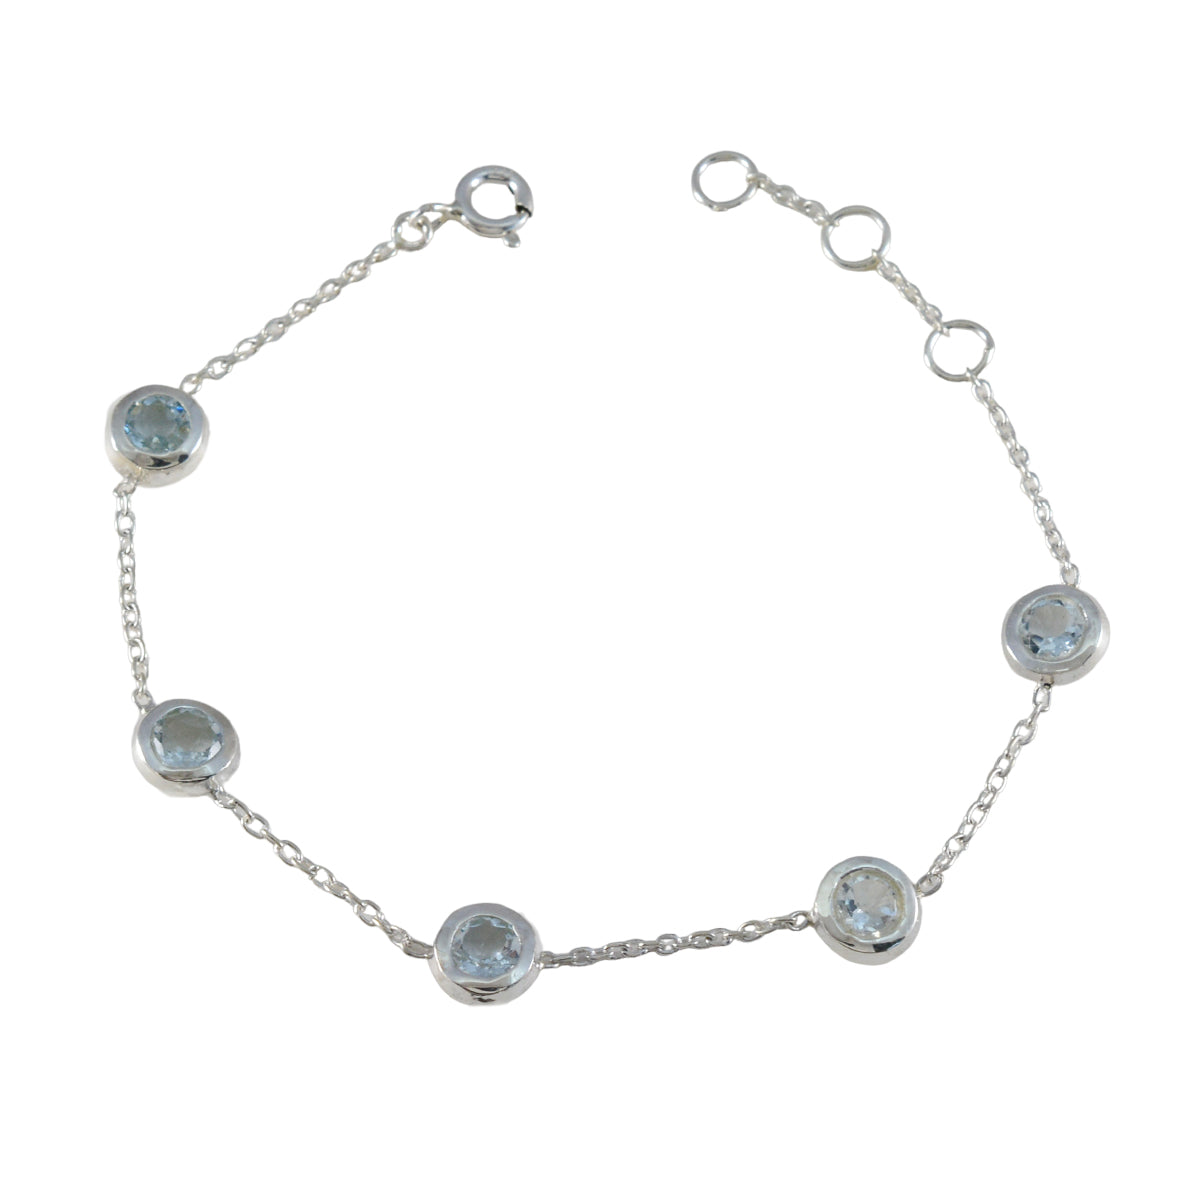 RIYO привлекательный браслет из стерлингового серебра 925 пробы для женщин, браслет с синим топазом, браслет с зубцами, браслет с пружинным замком, браслет l, размер 6-8,5 дюйма.